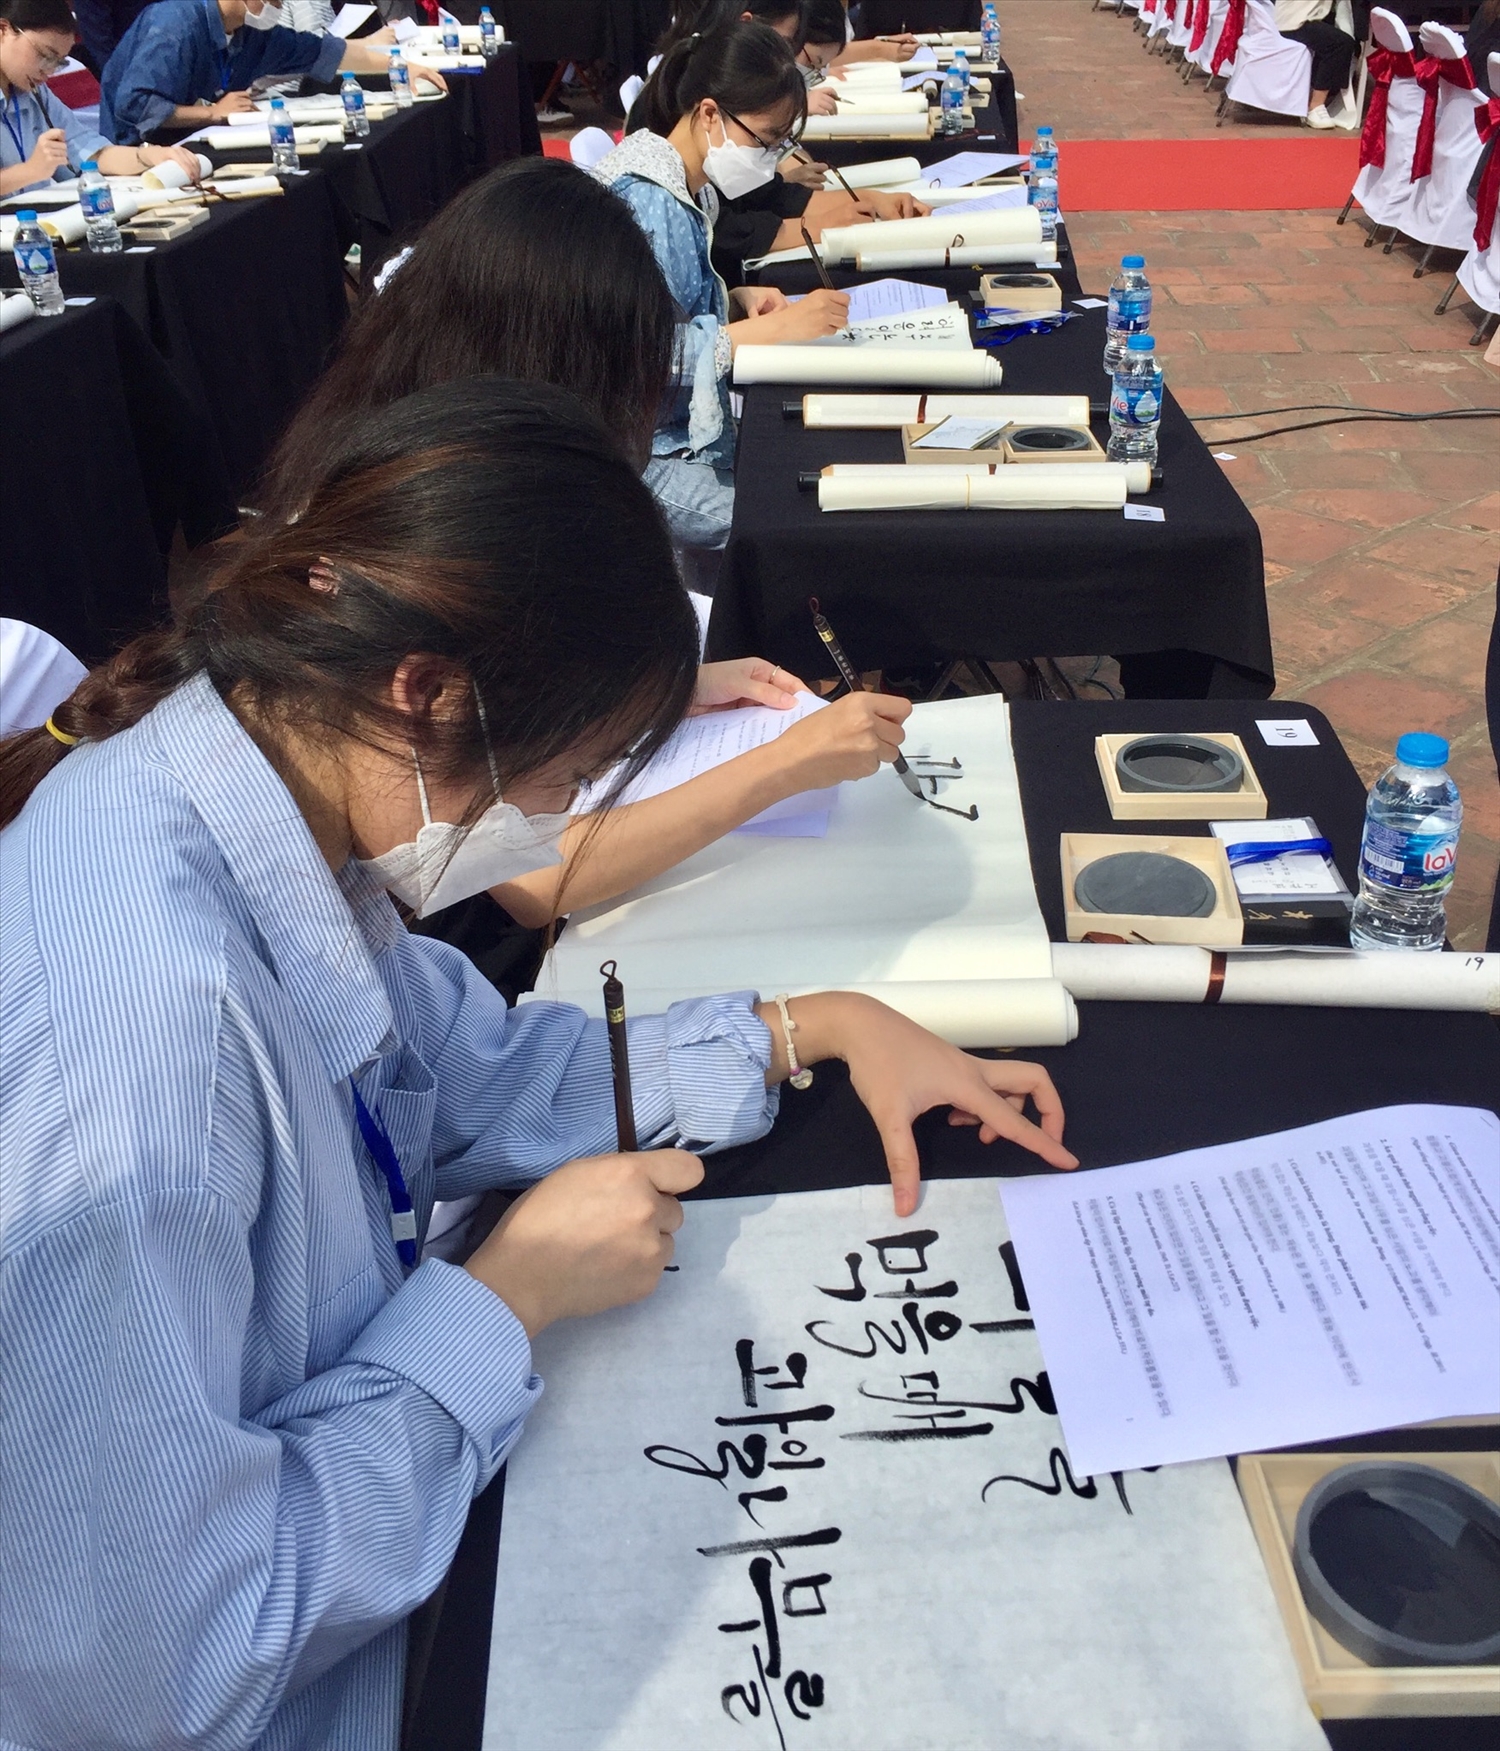 Hơn 100 thí sinh thi tài viết Danh ngôn của Chủ tịch Hồ Chí Minh trên thư pháp Hàn Quốc - Ảnh: VGP/Diệp Anh